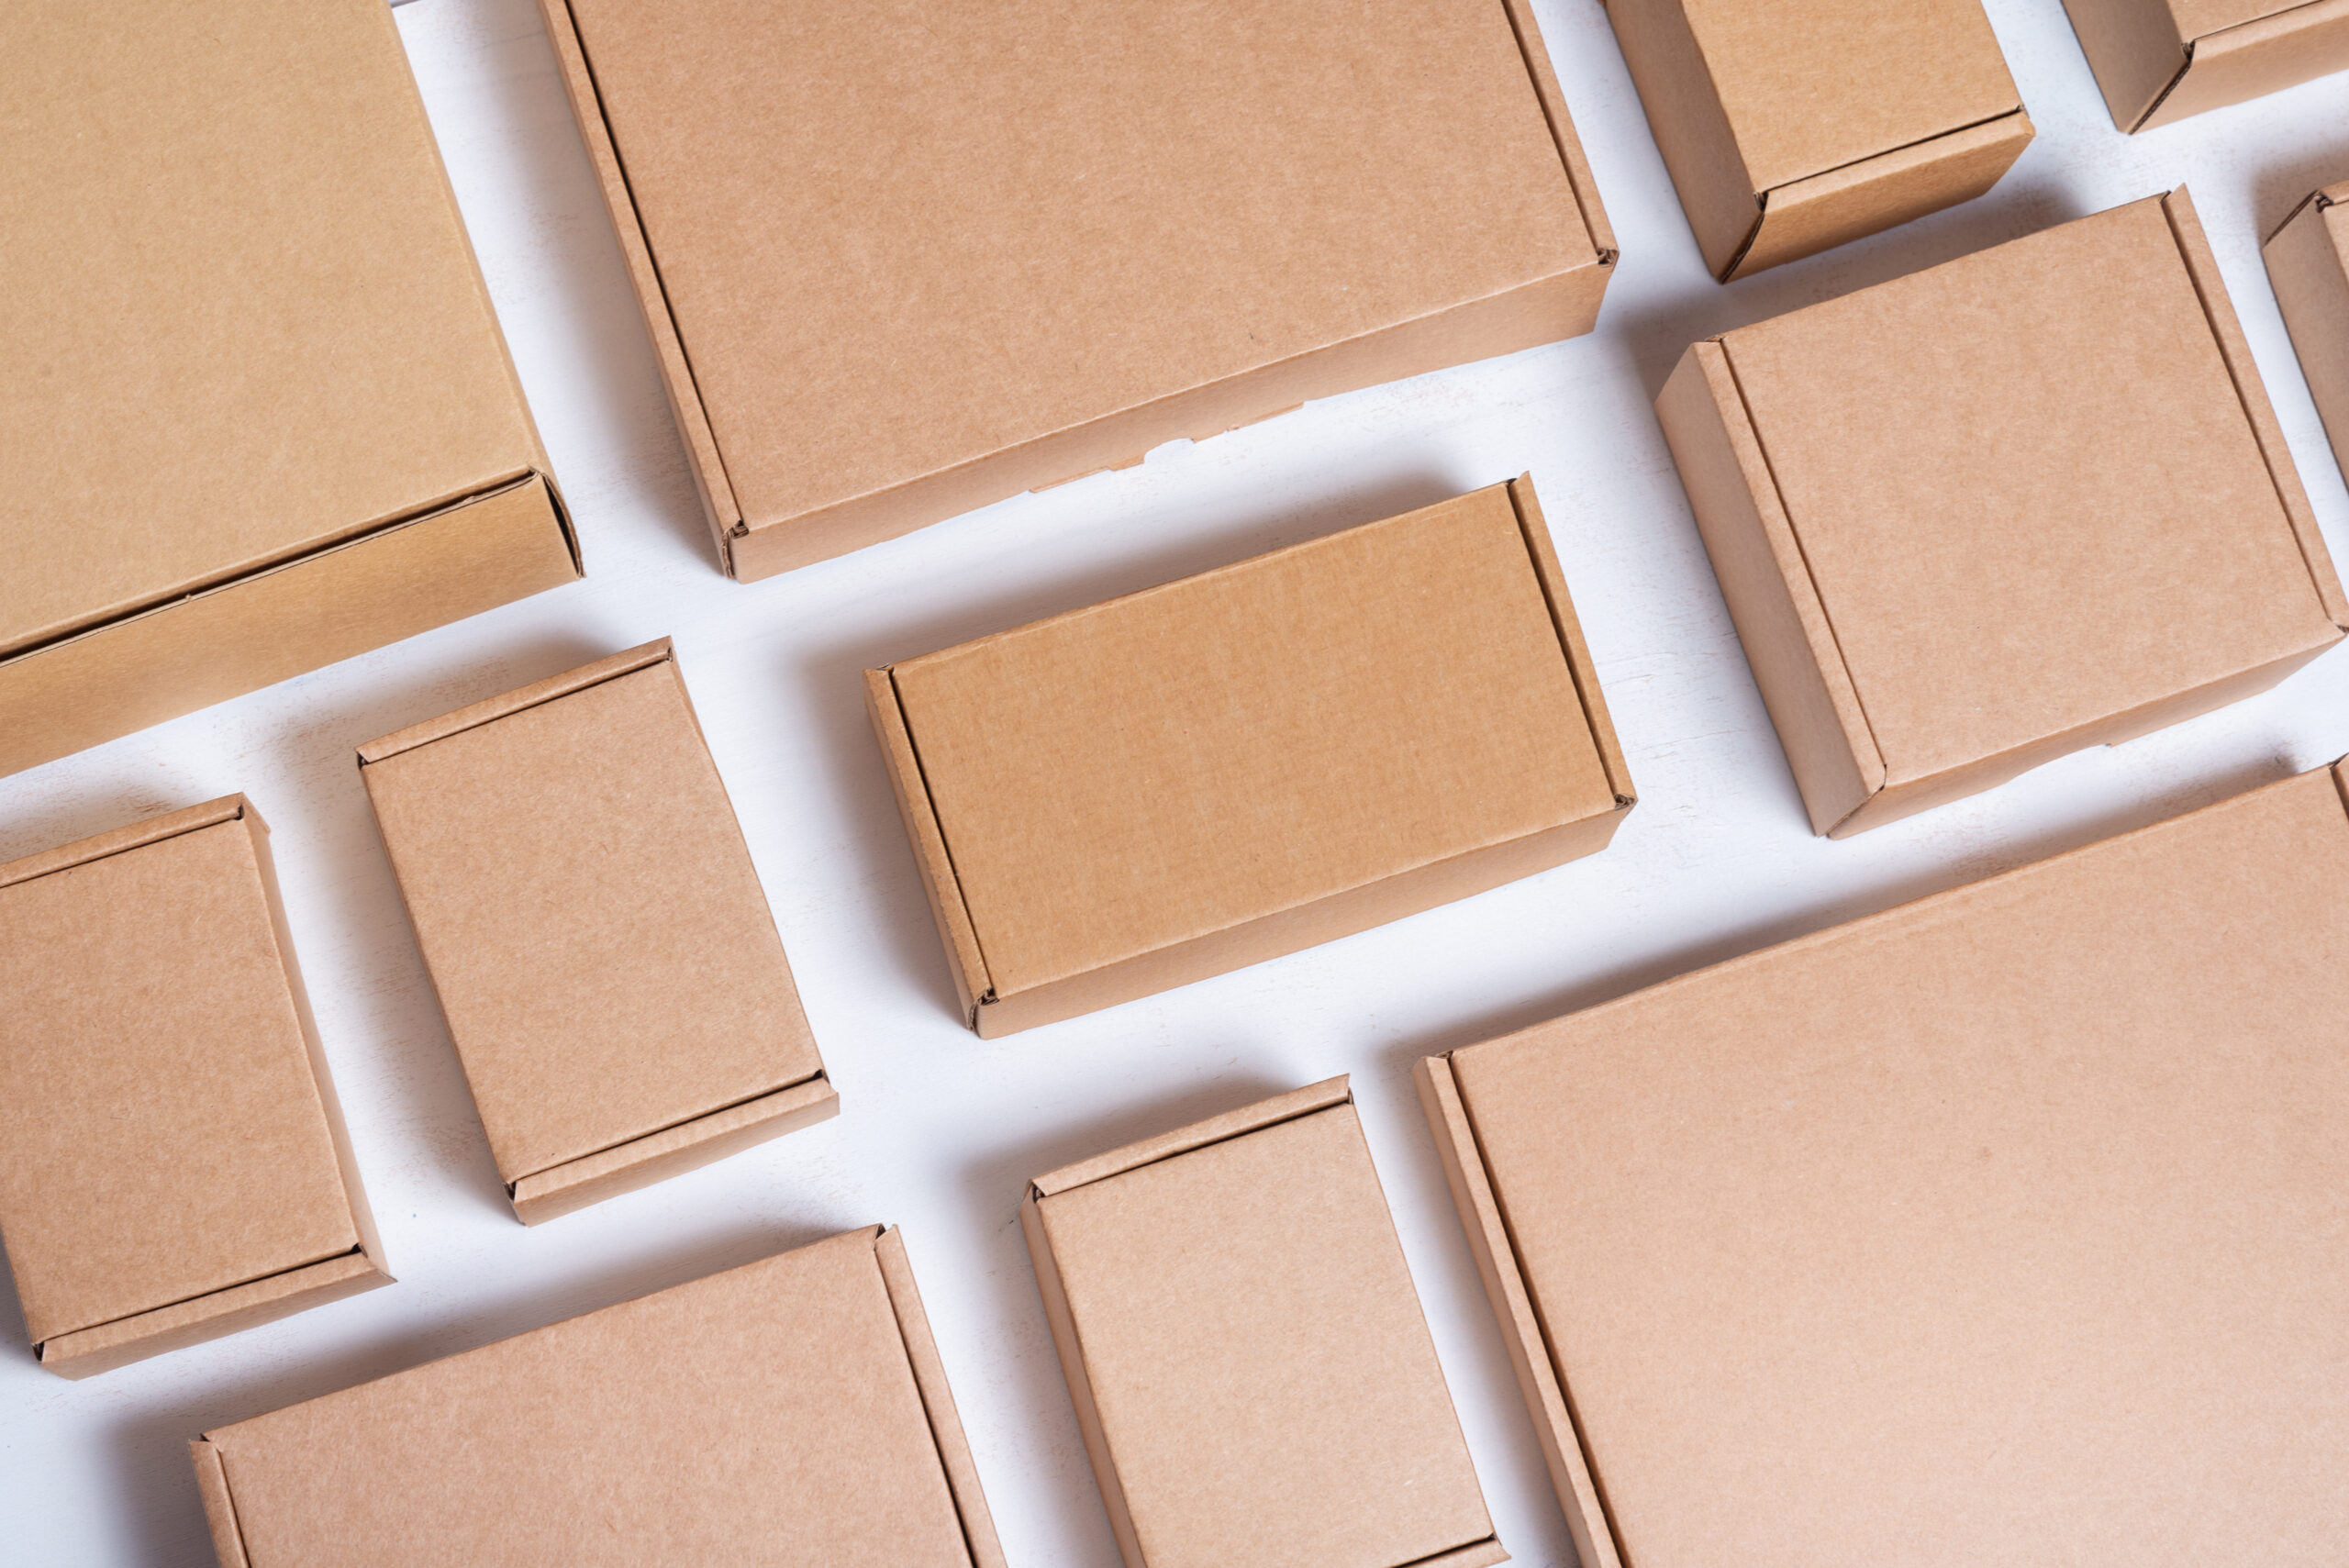 gran-cantidad-cajas-carton-marron-sobre-fondo-blanco-madera